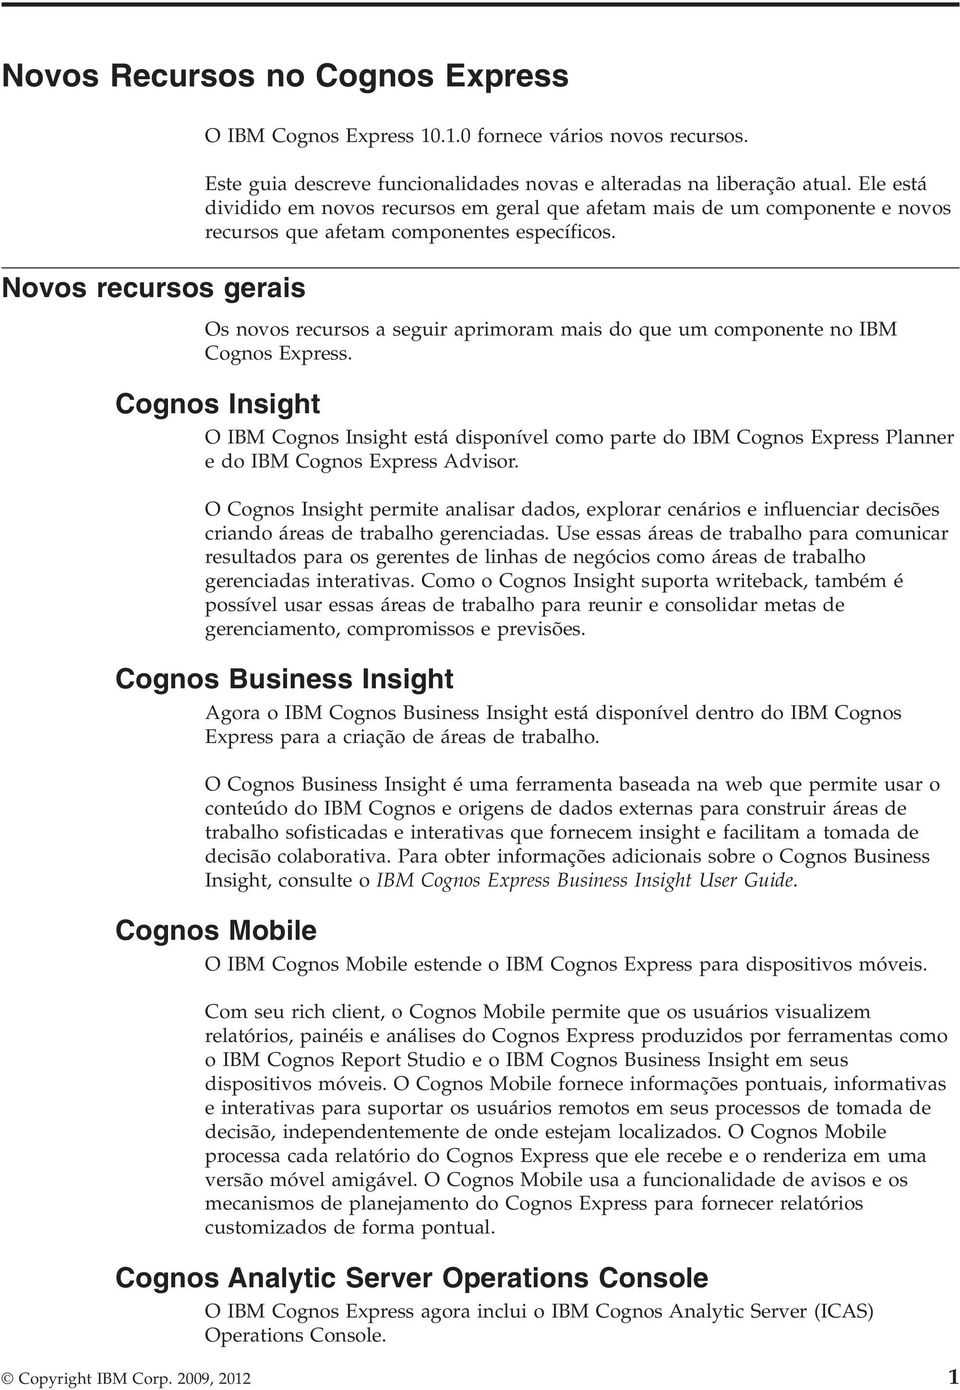 Os noos recursos a seguir aprimoram mais do que um componente no IBM Cognos Express.